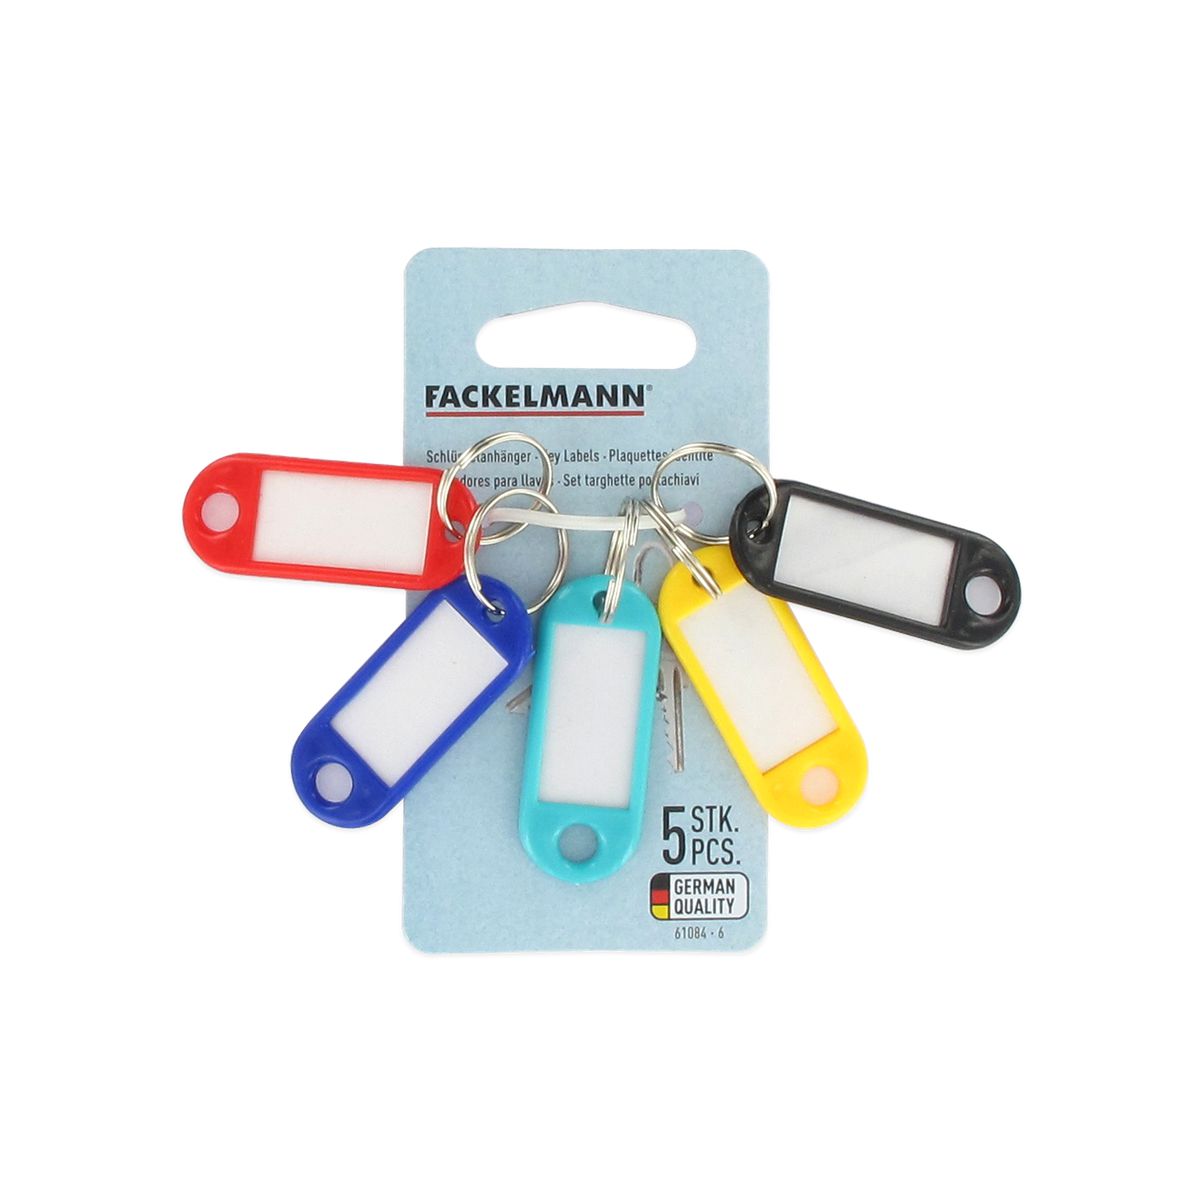 Lot de 5 portes clefs avec étiquettes Fackelmann